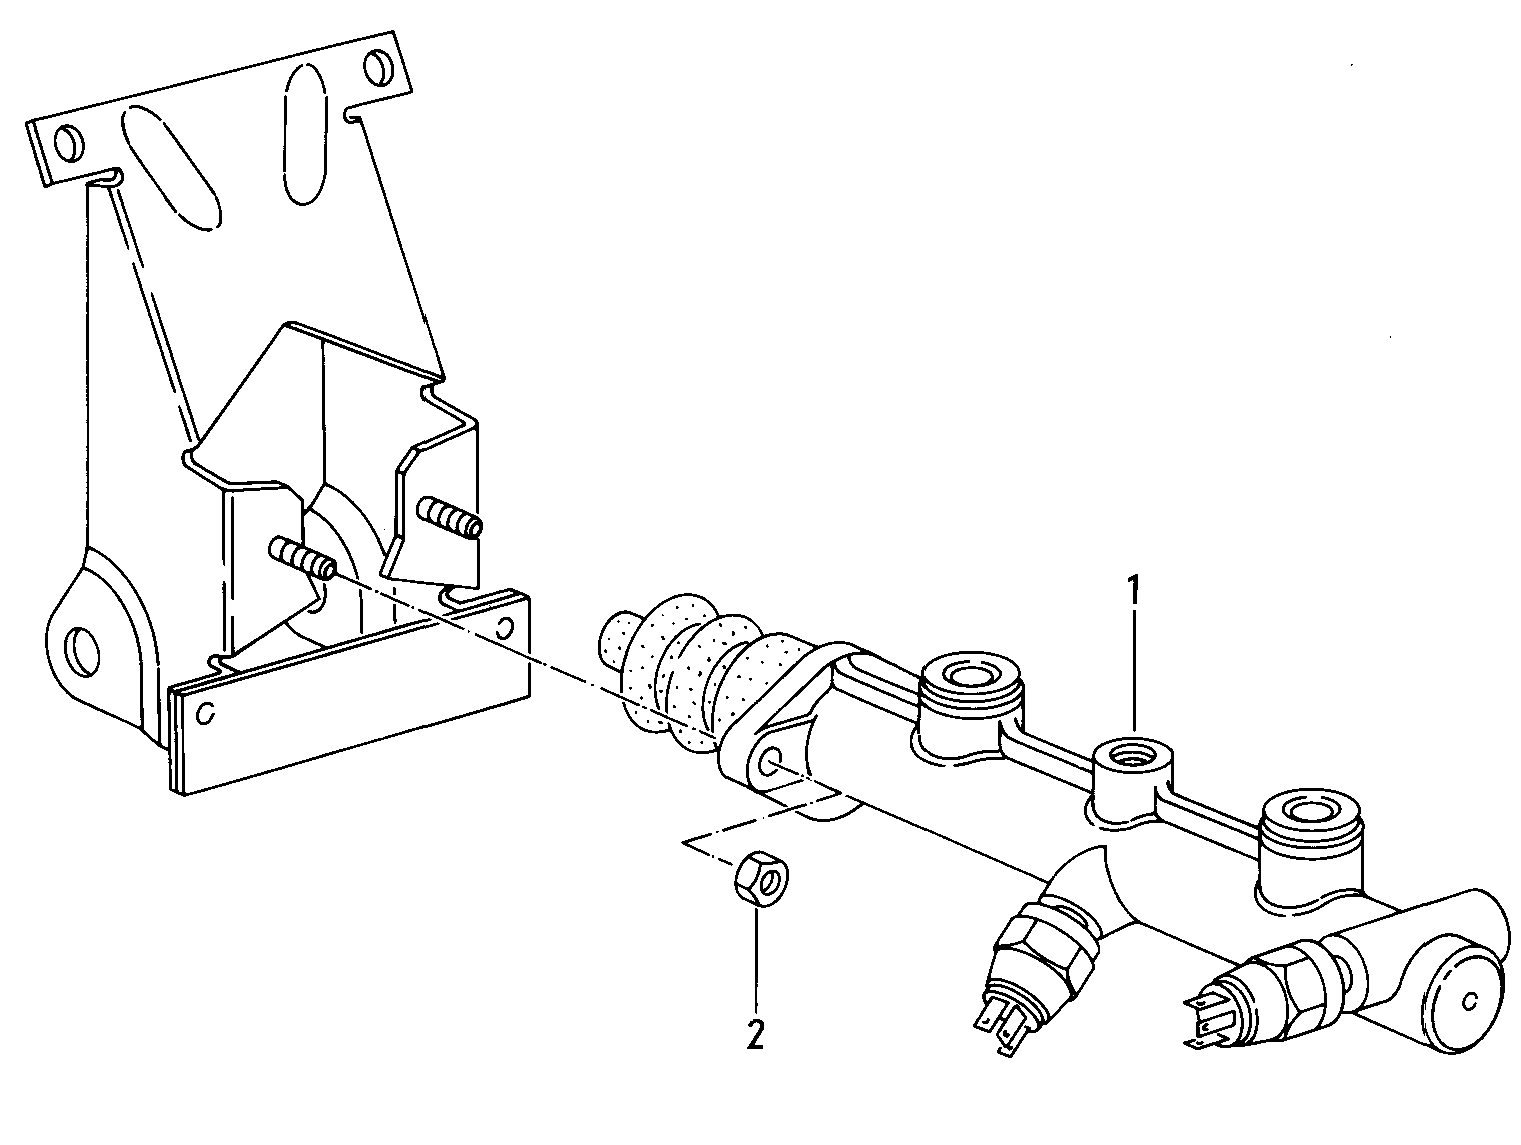 hoofdremcilinder; voor wagens met
rembekrachtiger - Typ 2/syncro(T2)  